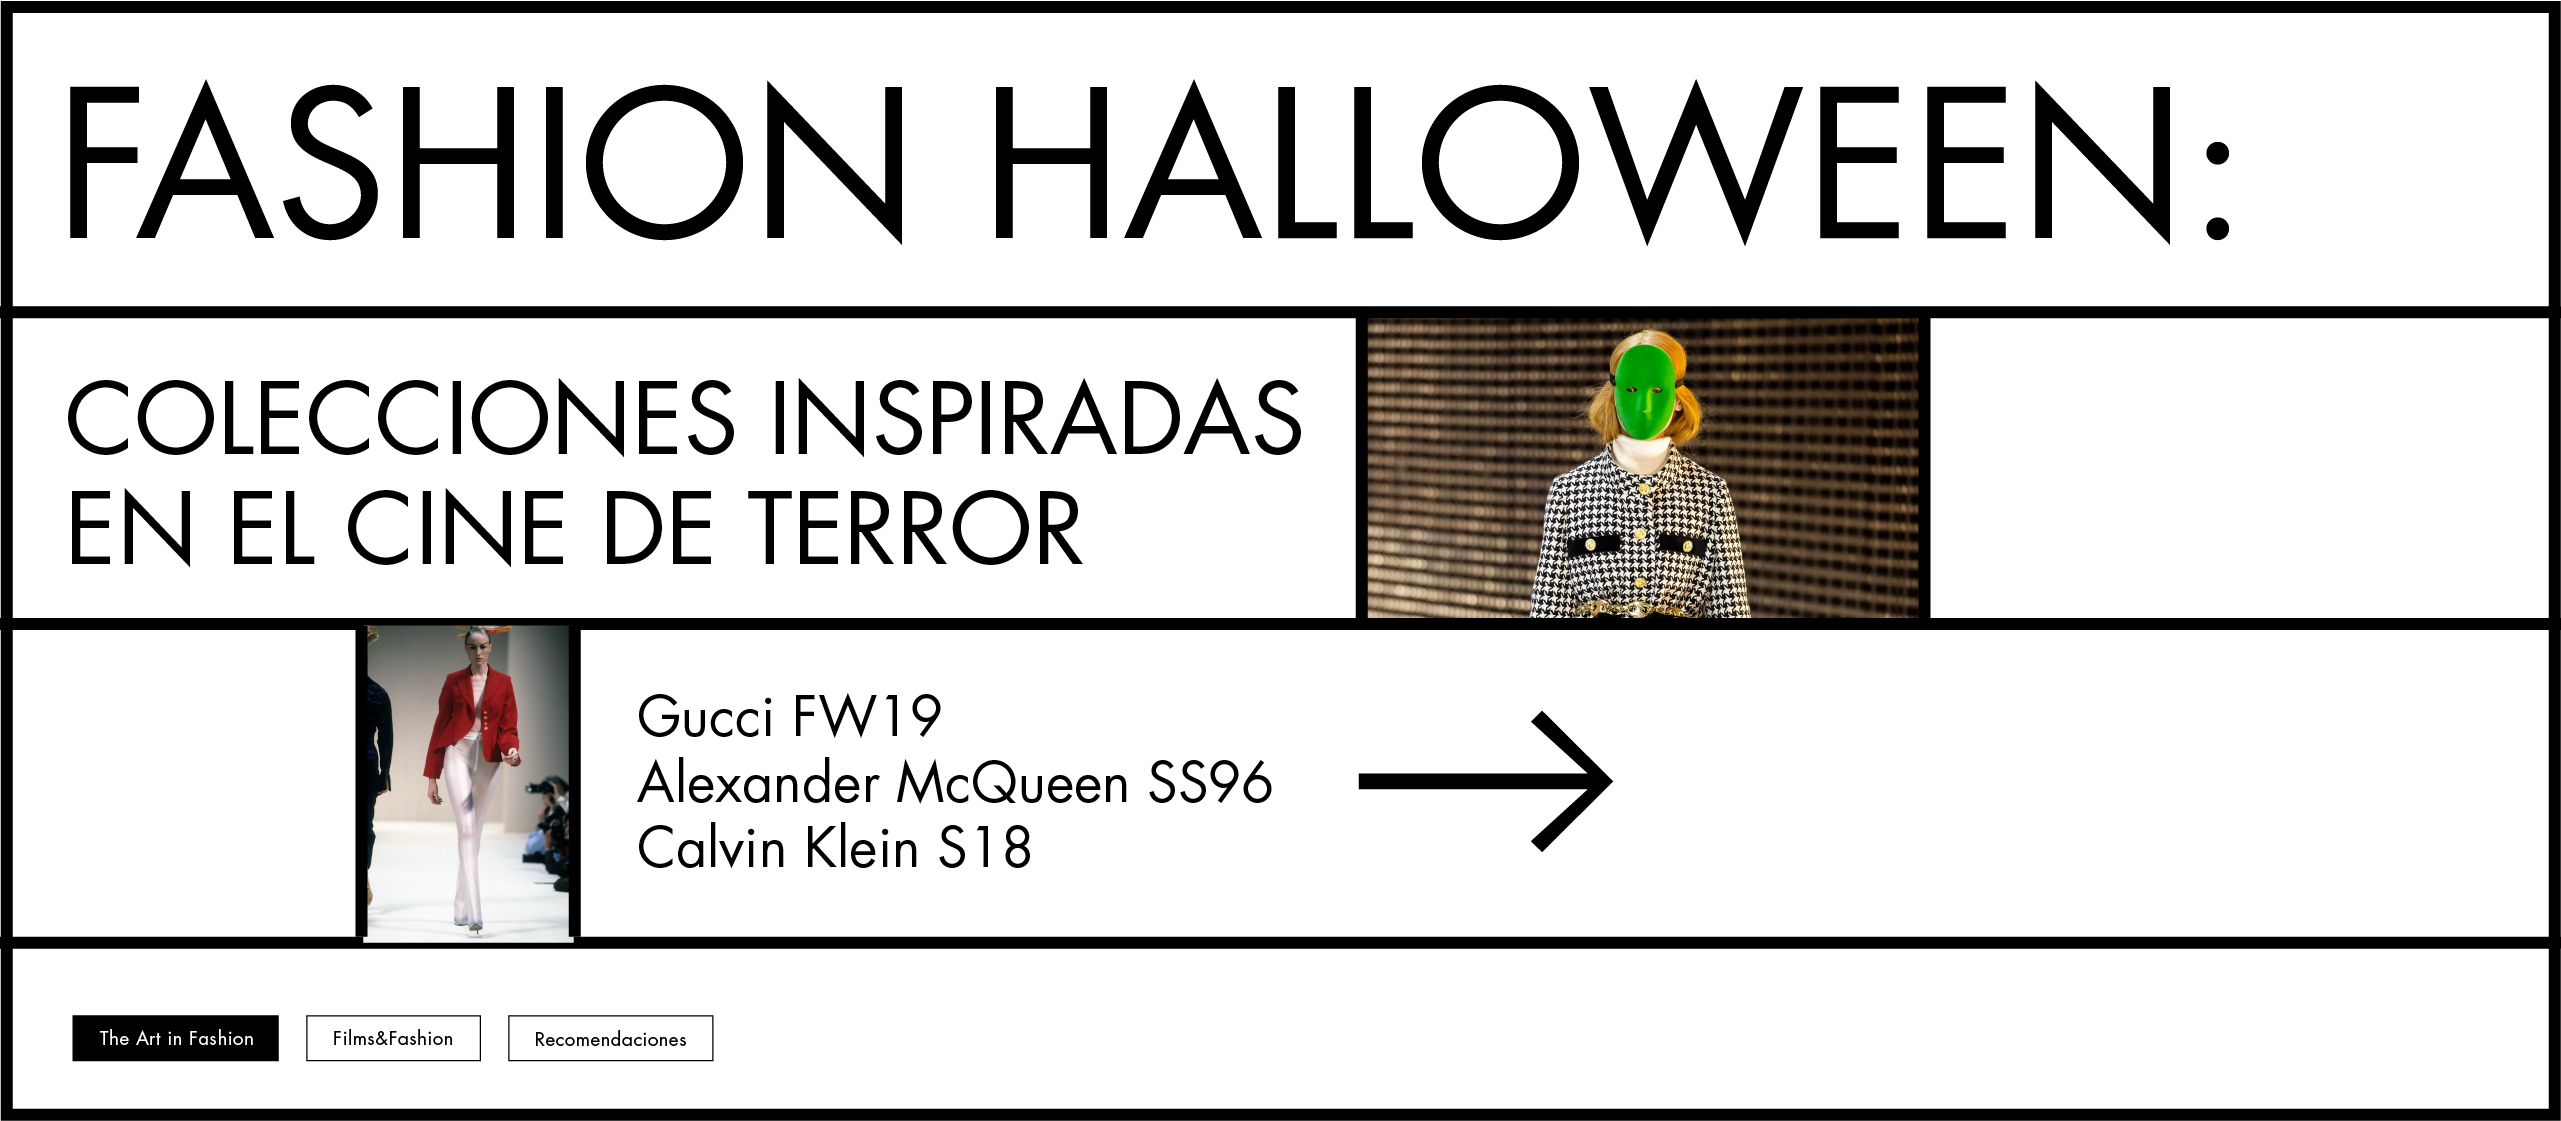 Fashion Halloween: Colecciones inspiradas en el cine de terror